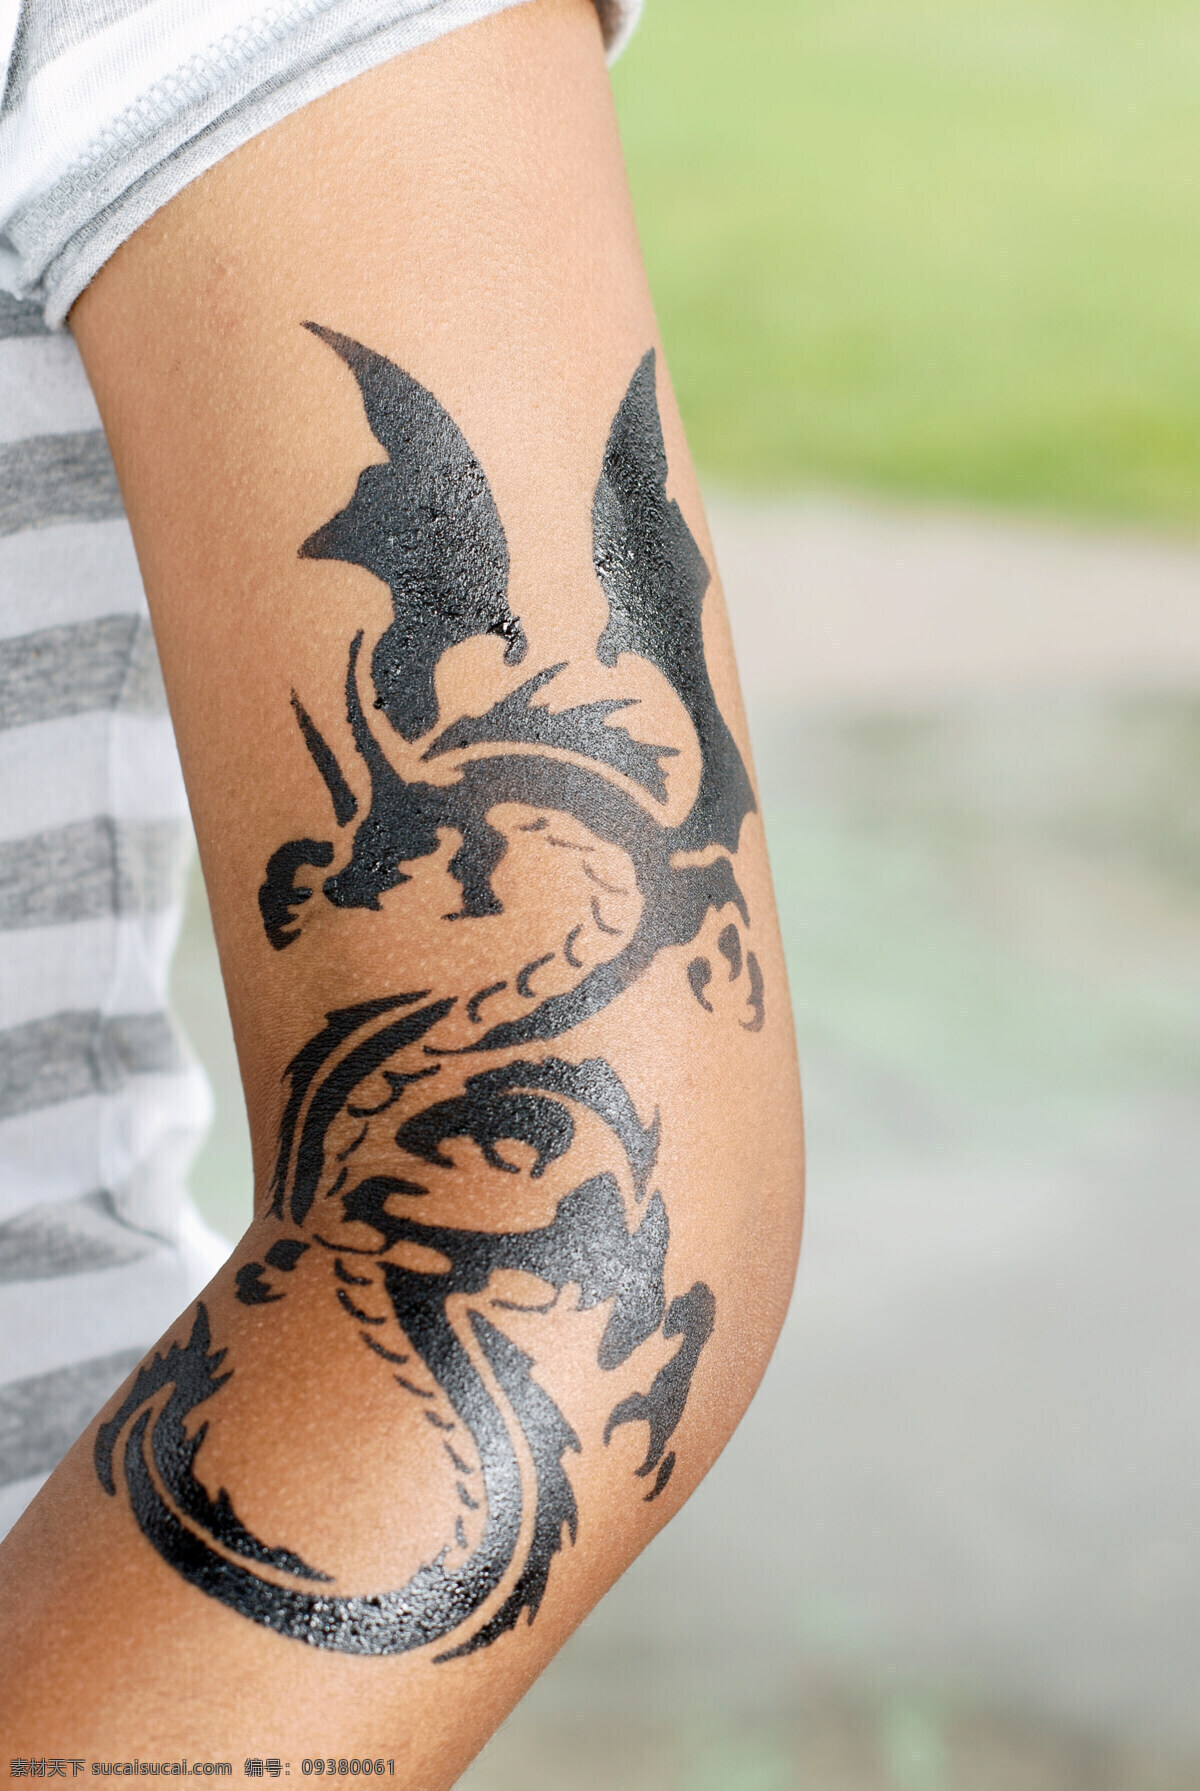 手臂 龙图 刺青 纹身 纹身的女人 手臂纹身 生活人物 人物图片